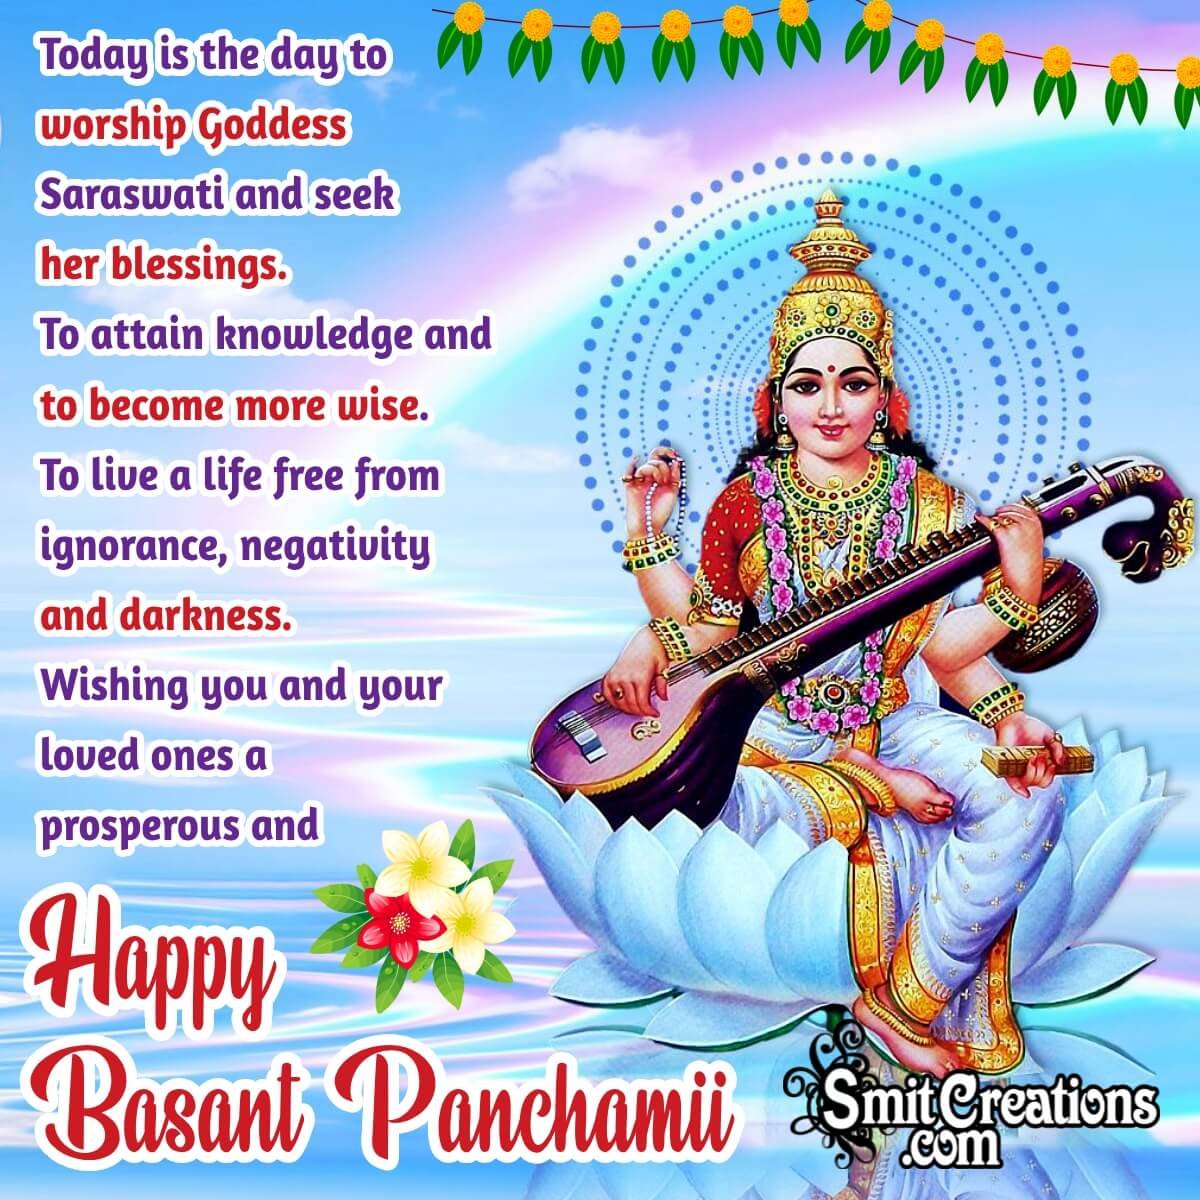 Happy Basant Panchami Blessings